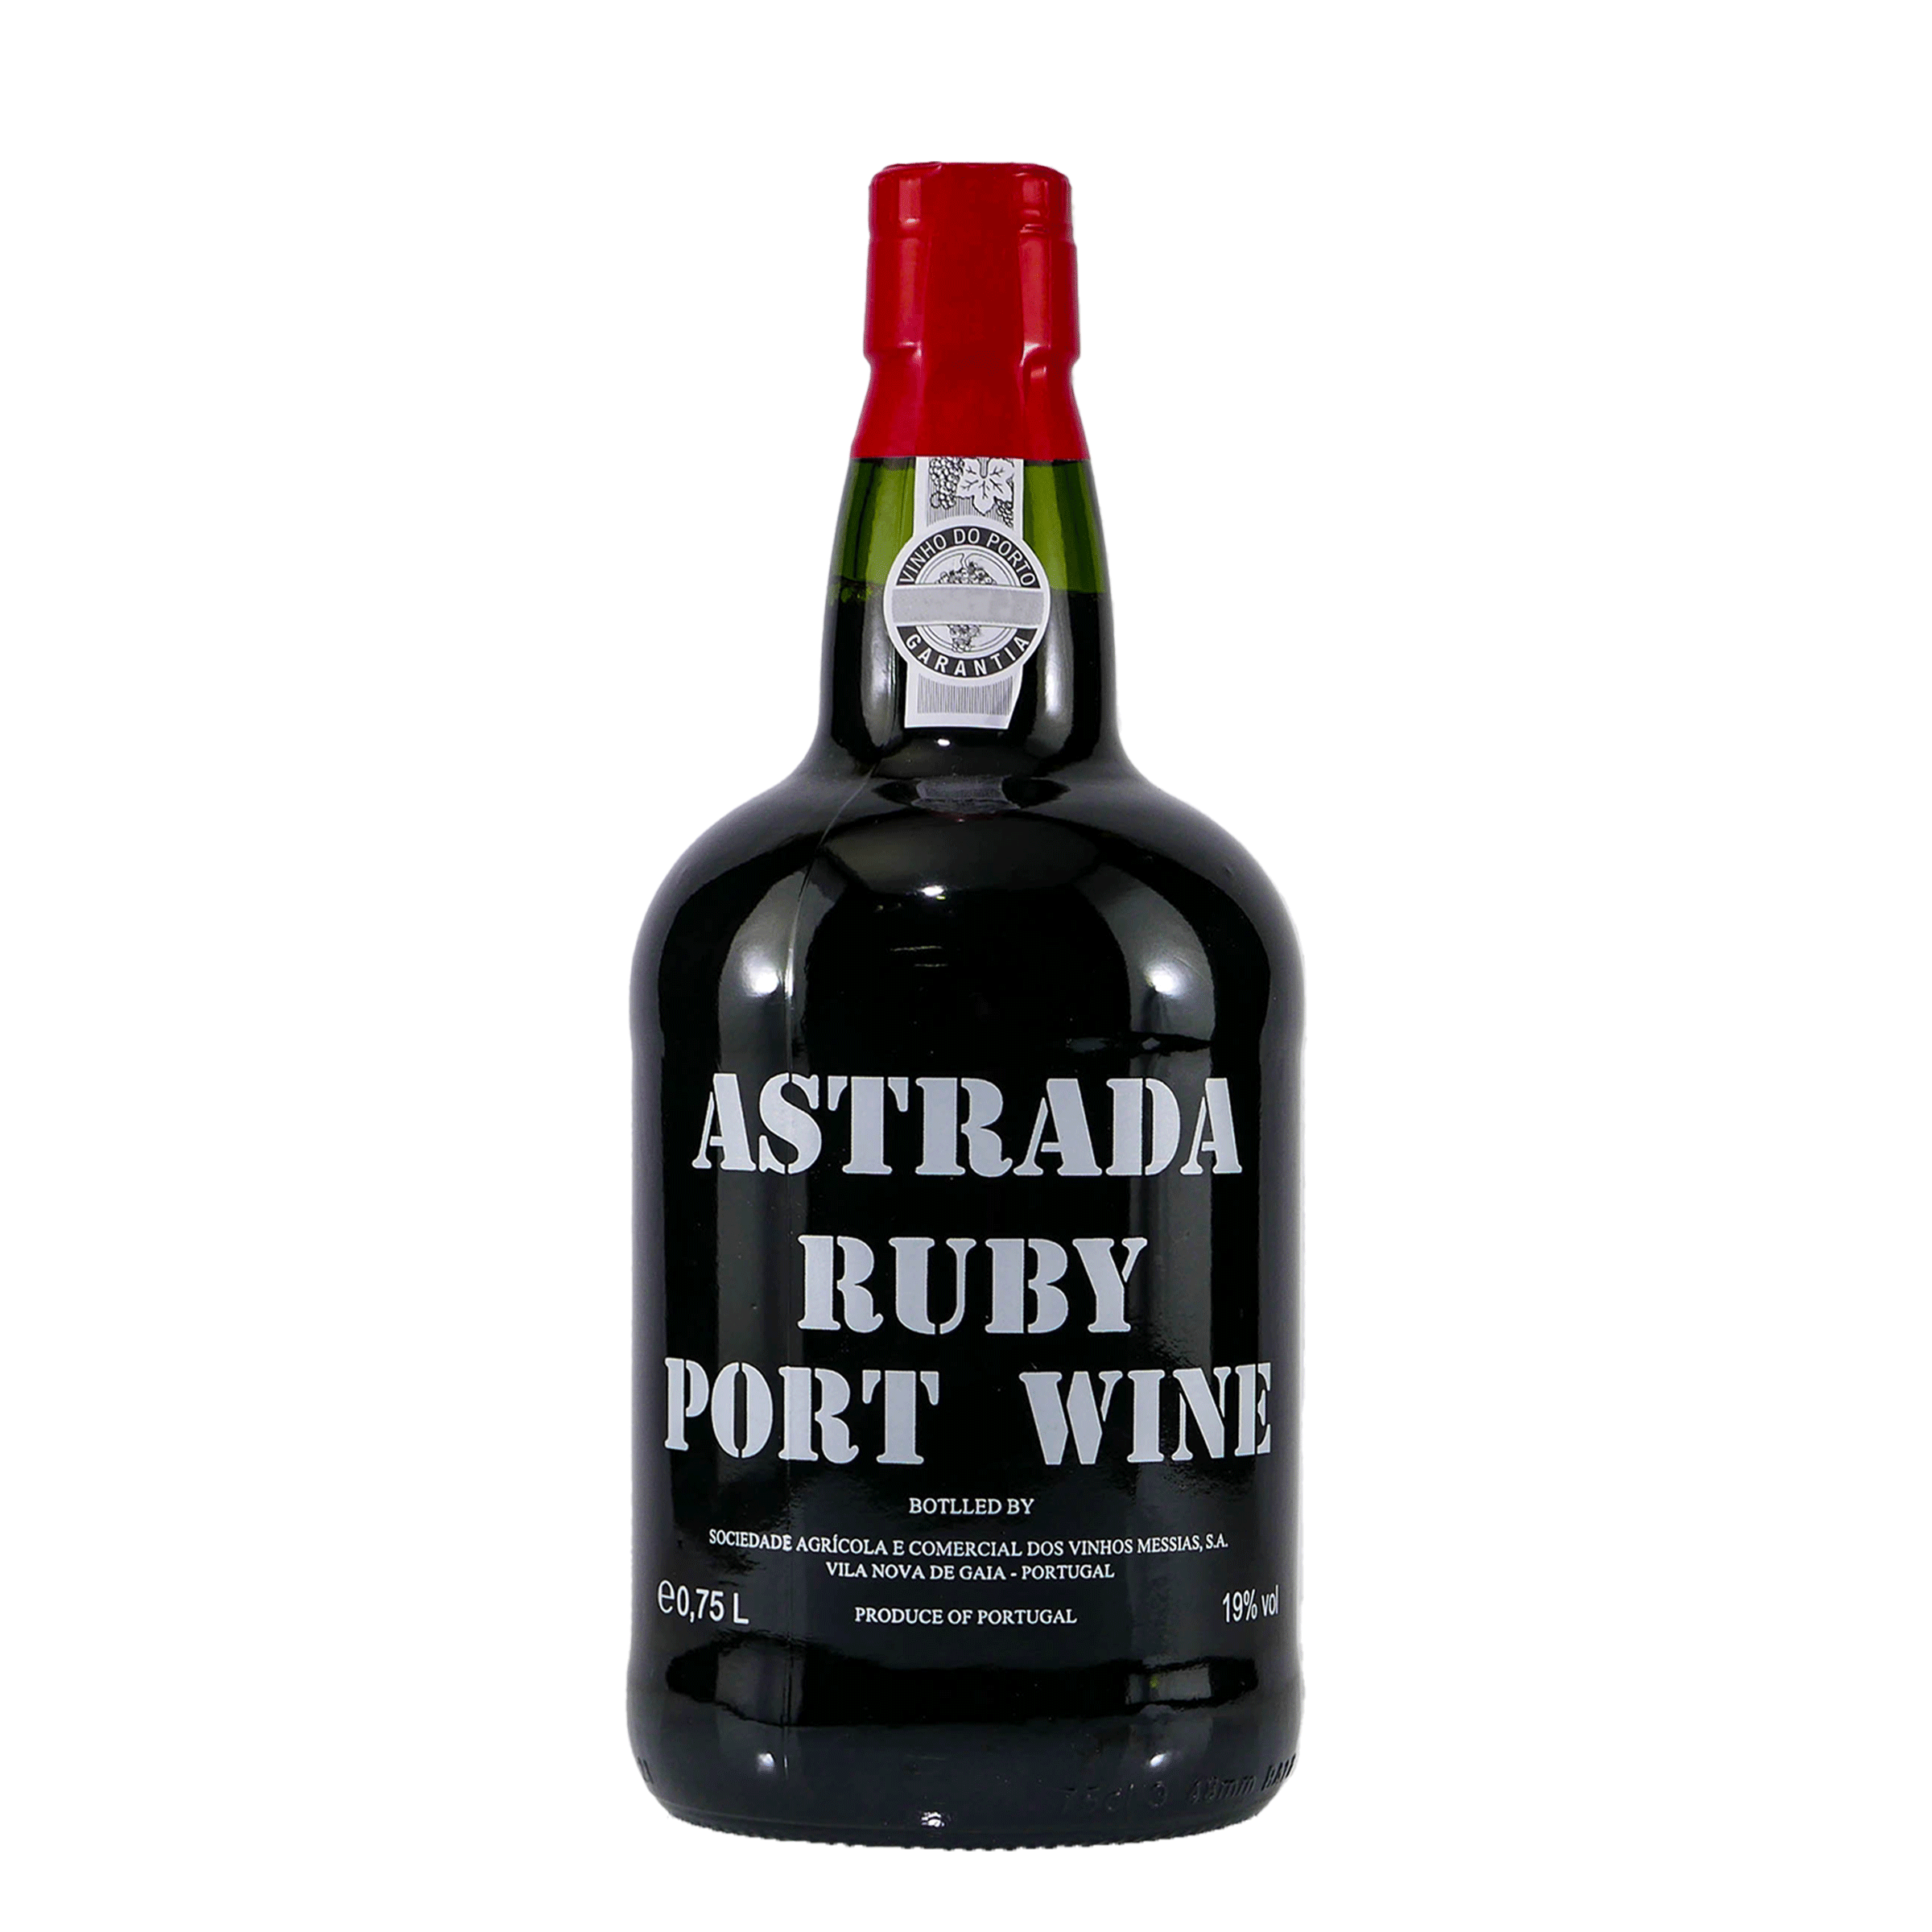 Astrada Ruby Portwein (6 x 0,75L)